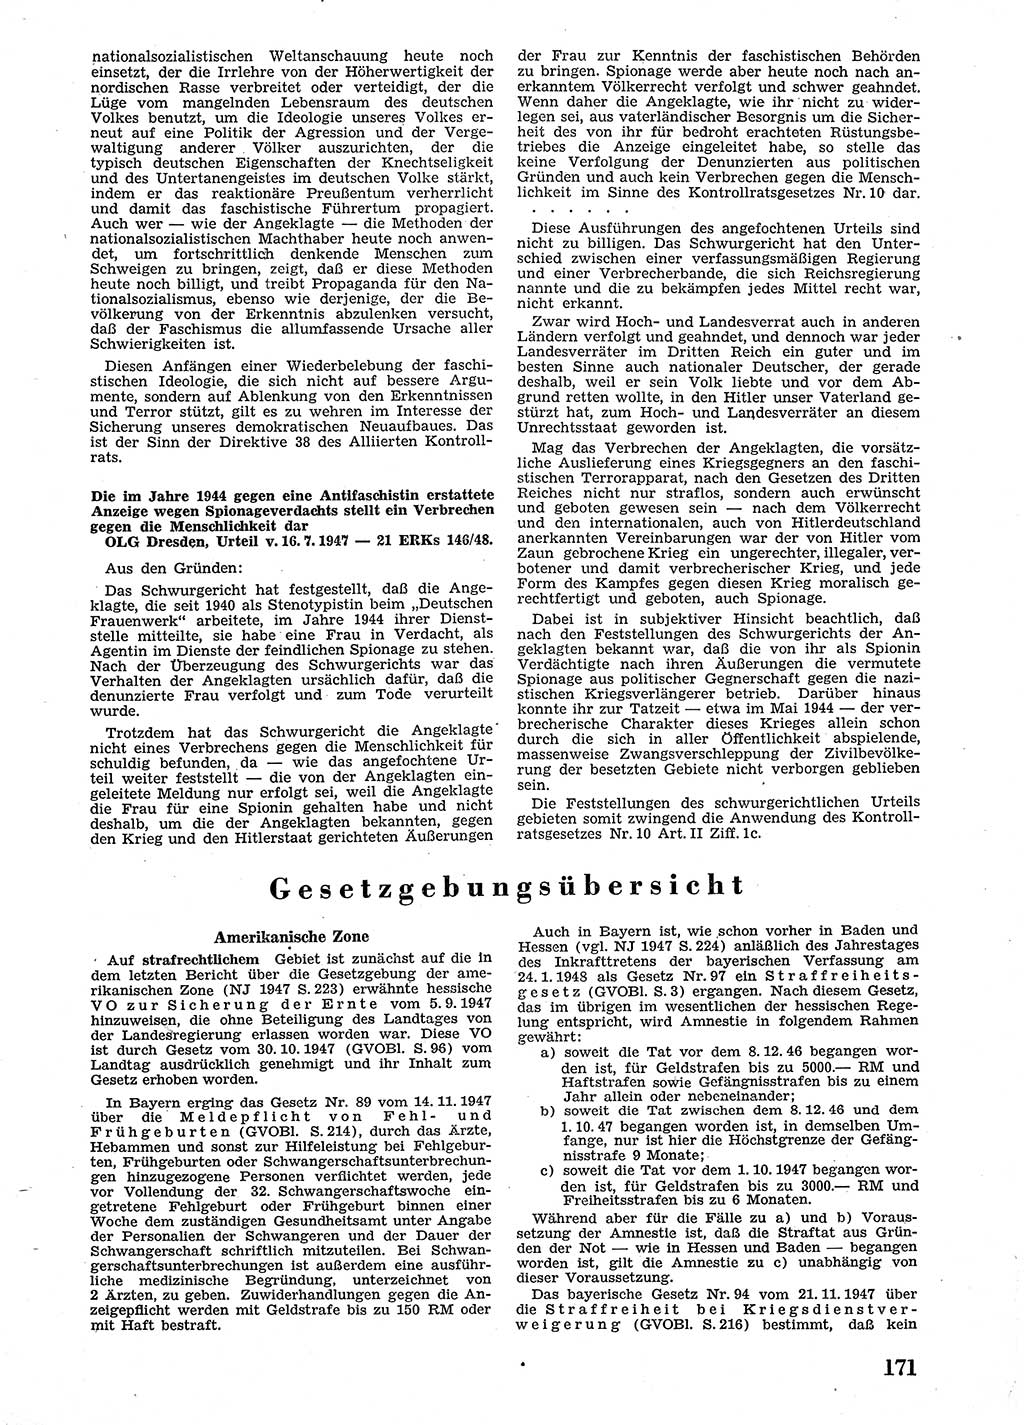 Neue Justiz (NJ), Zeitschrift für Recht und Rechtswissenschaft [Sowjetische Besatzungszone (SBZ) Deutschland], 2. Jahrgang 1948, Seite 171 (NJ SBZ Dtl. 1948, S. 171)